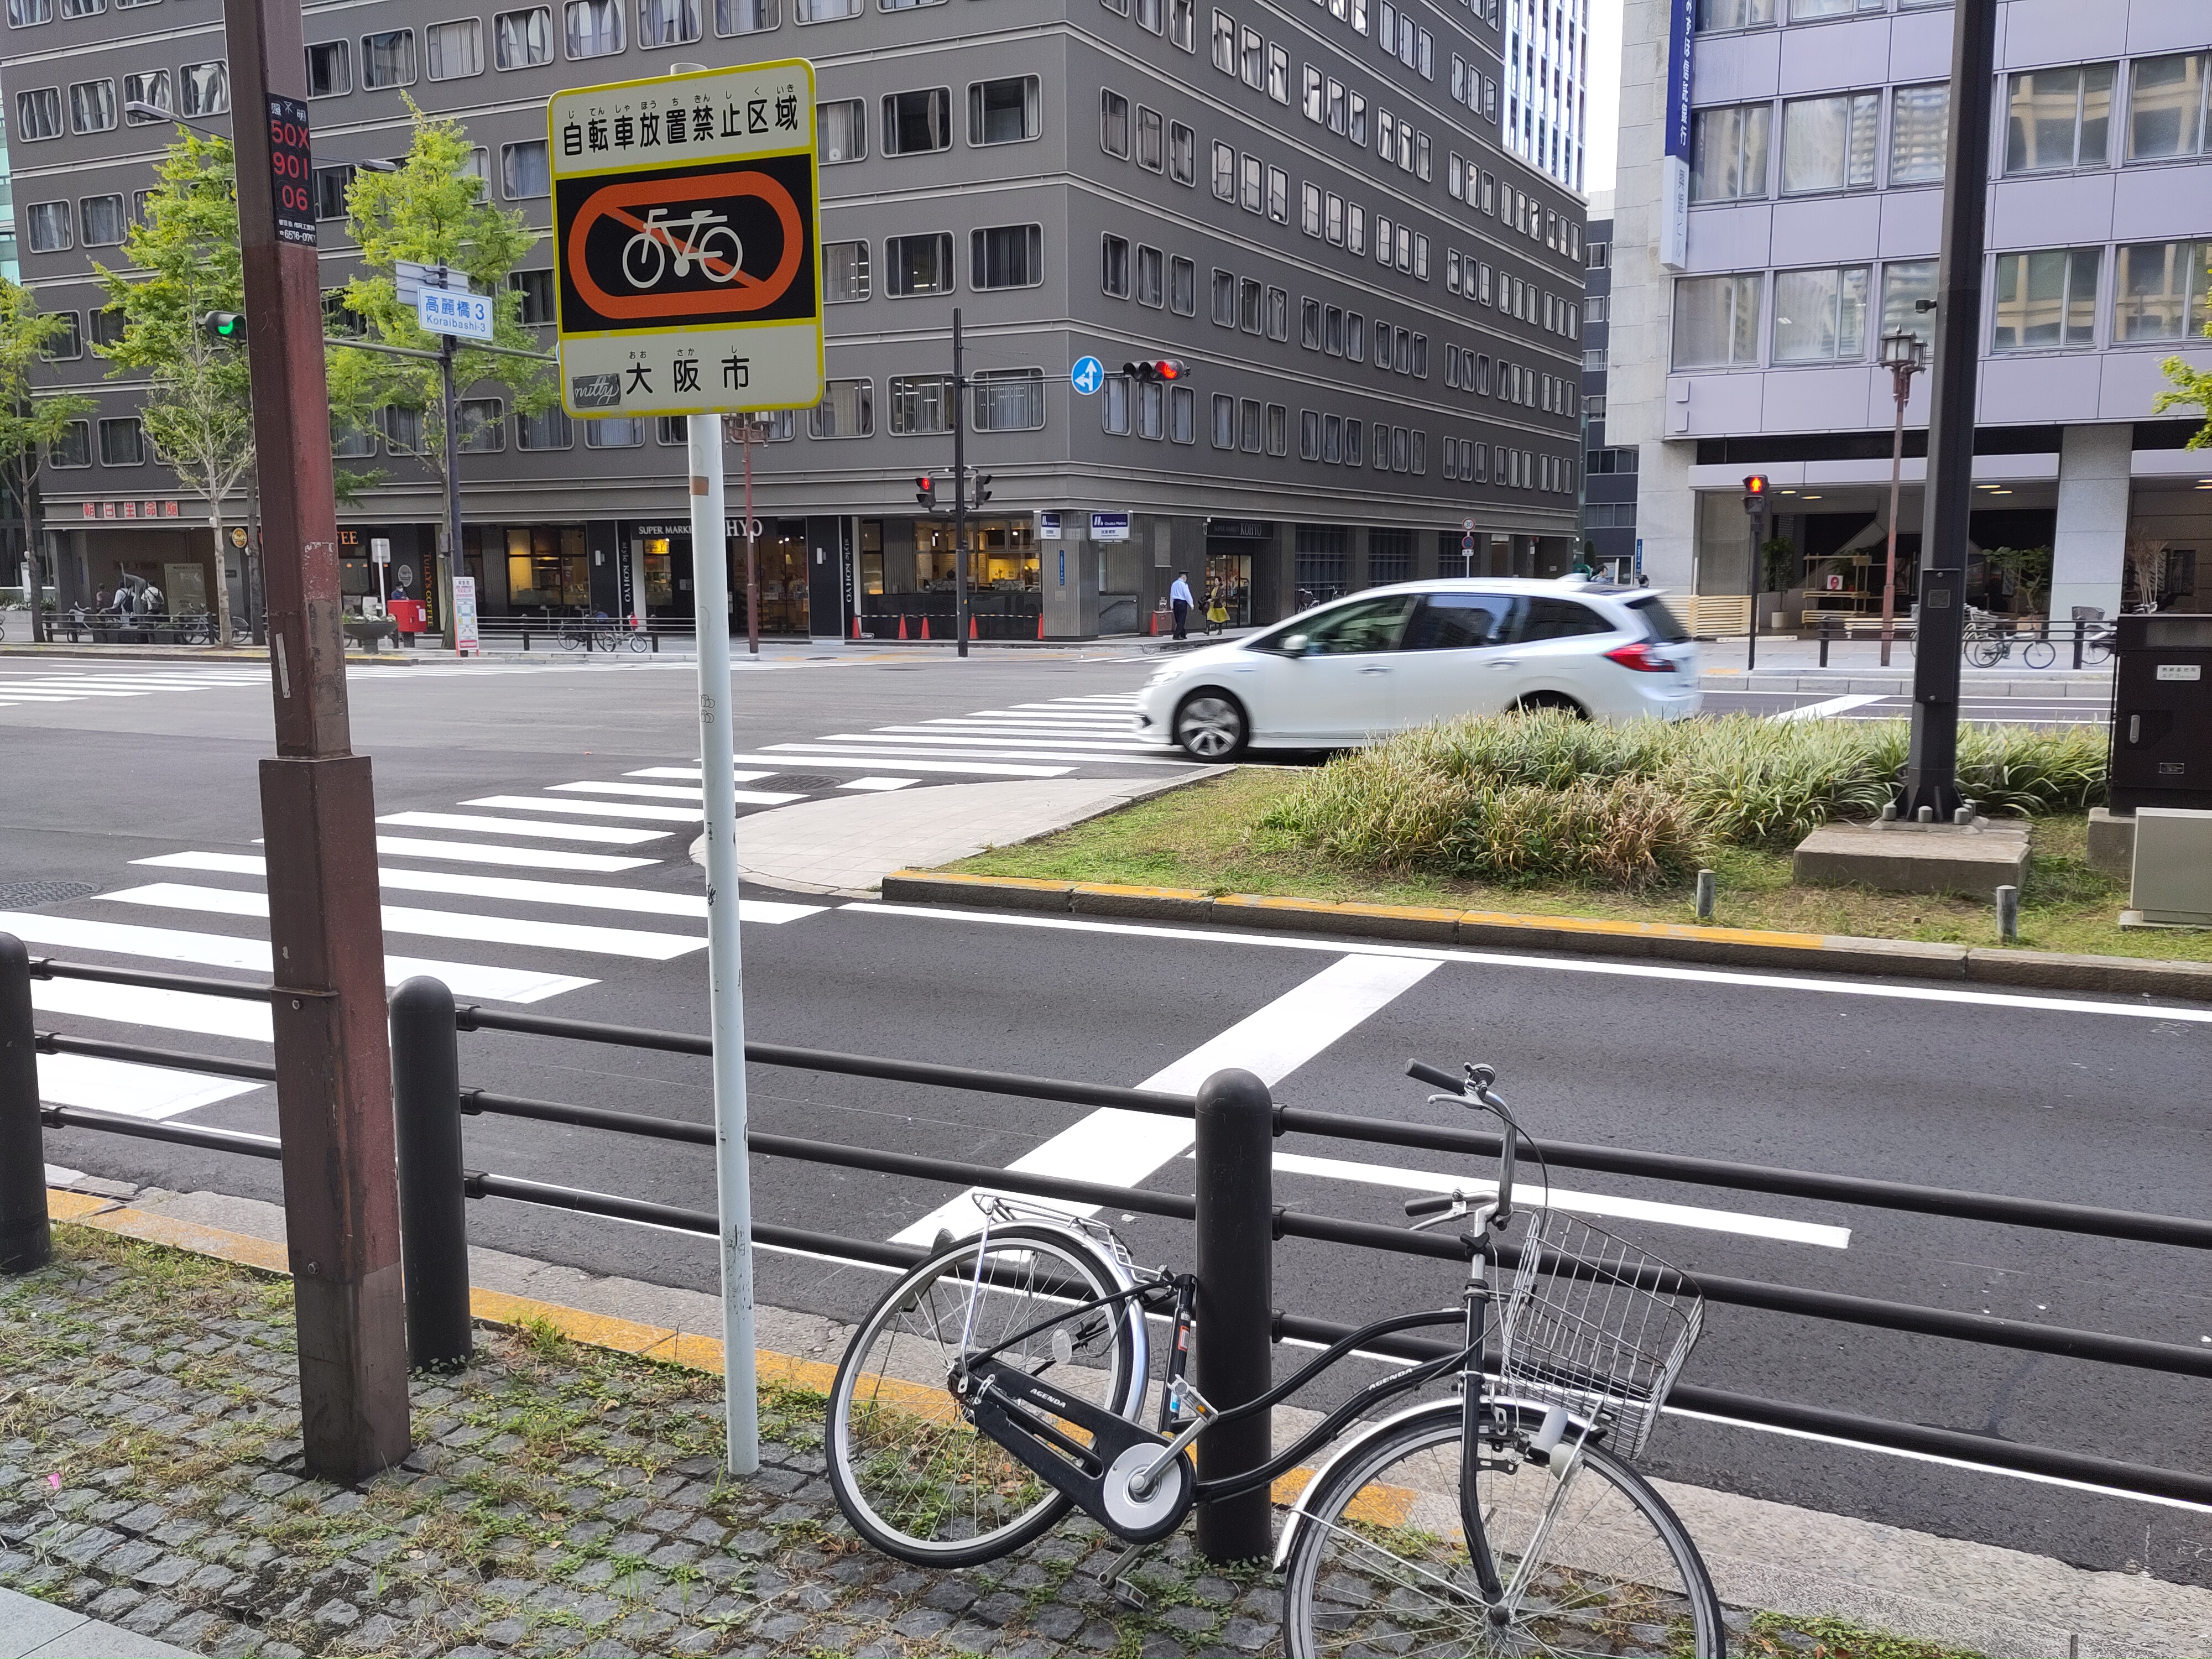 Blick auf eine Straße. Ein Geländer trennt den Bürgersteig von der Straße ab. Ein Schild mit einem durchgestrichenen Fahrrad steht am Geländer, daneben ein angeschlossenes Fahrrad.